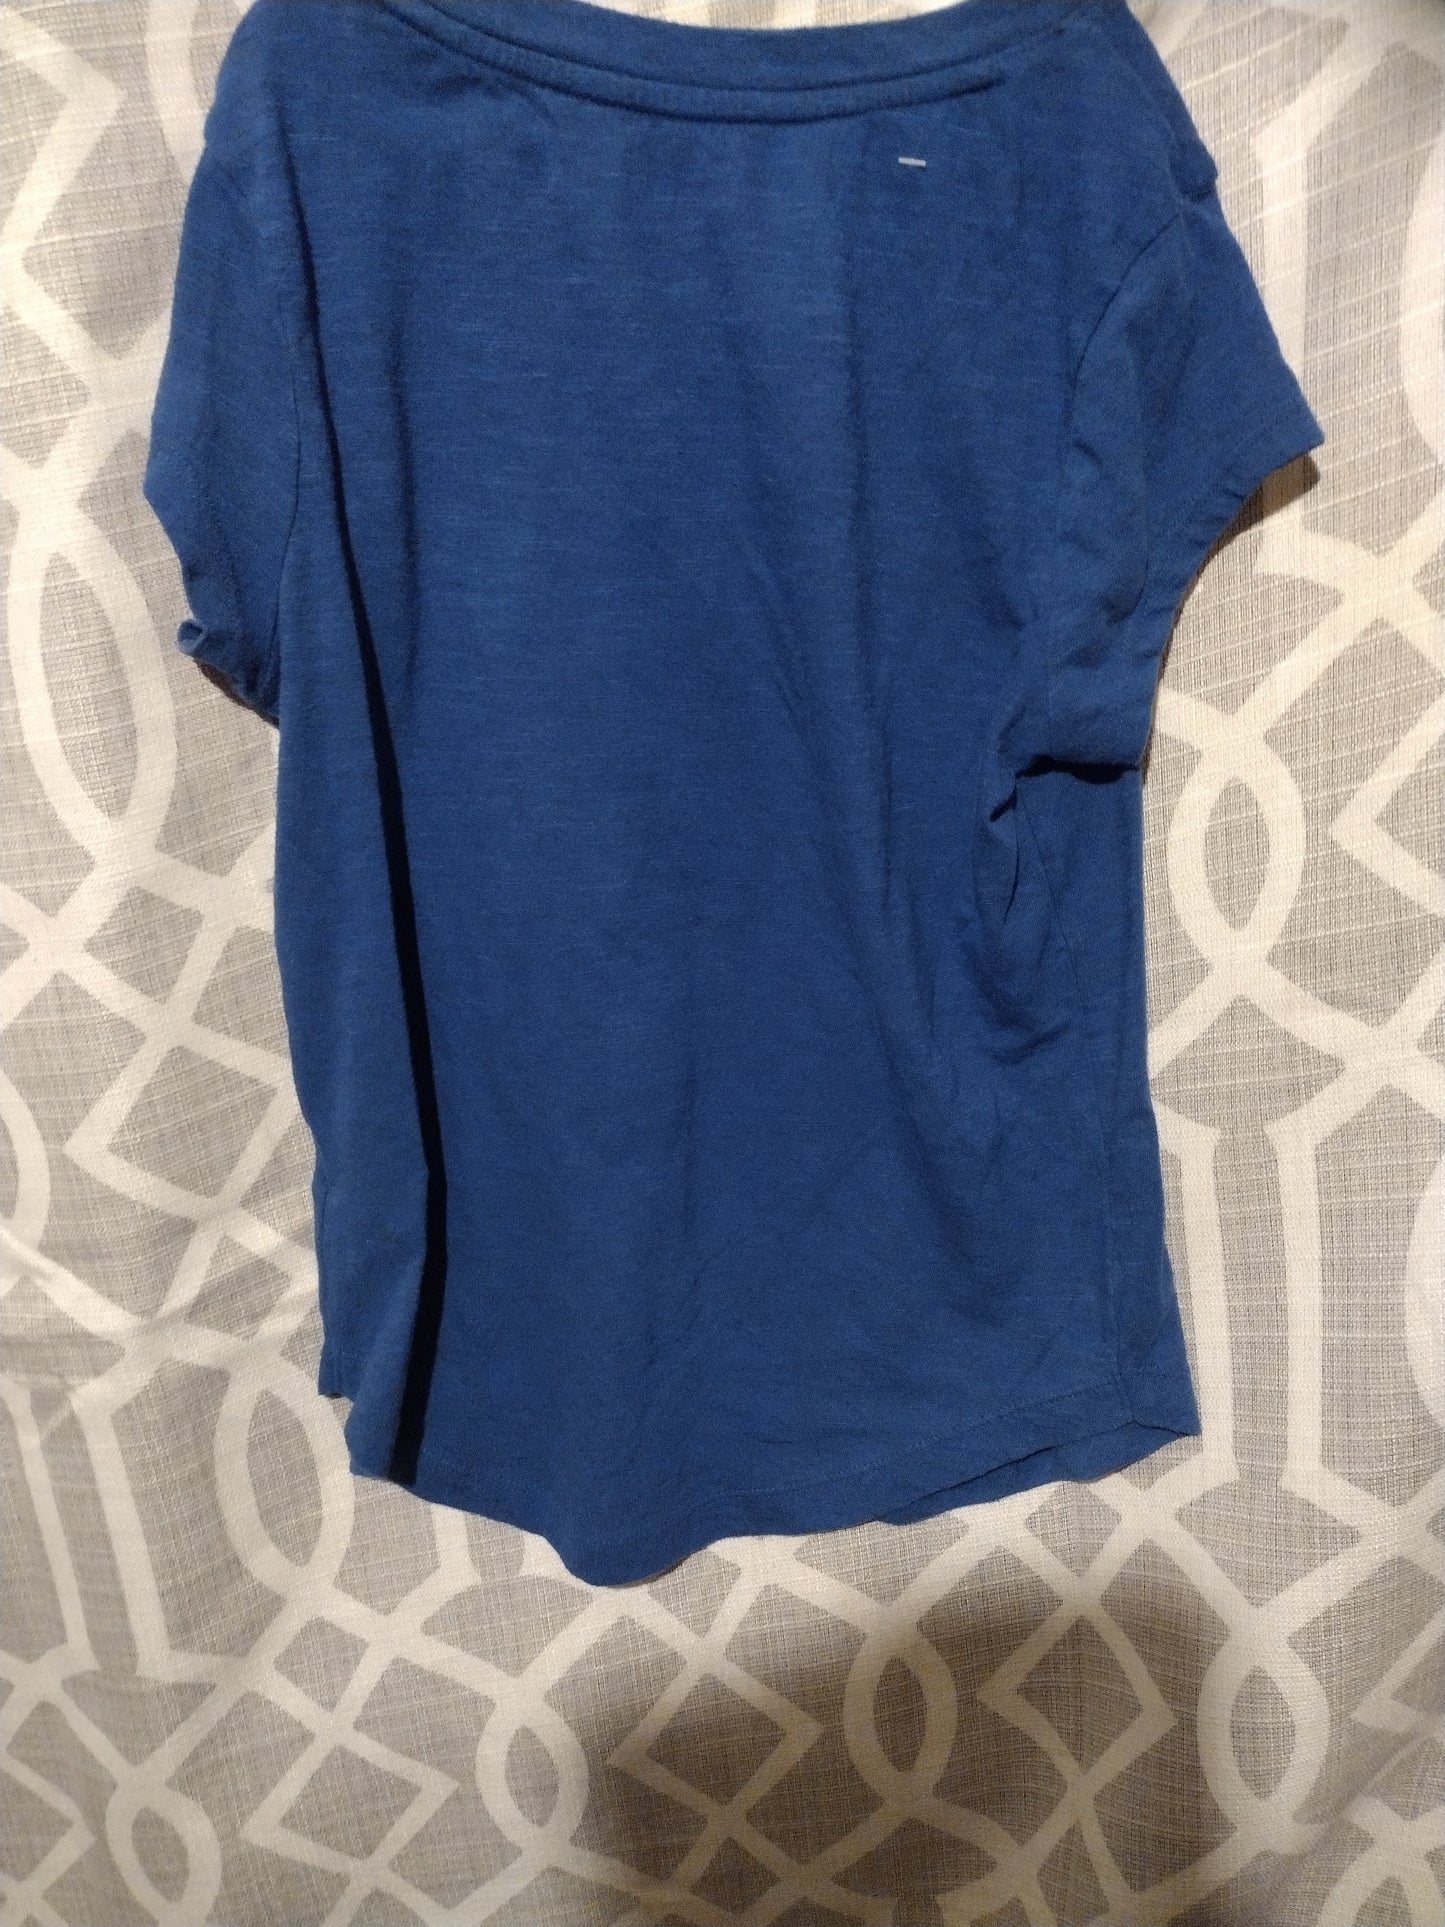 Girl blue t-shirt size 12